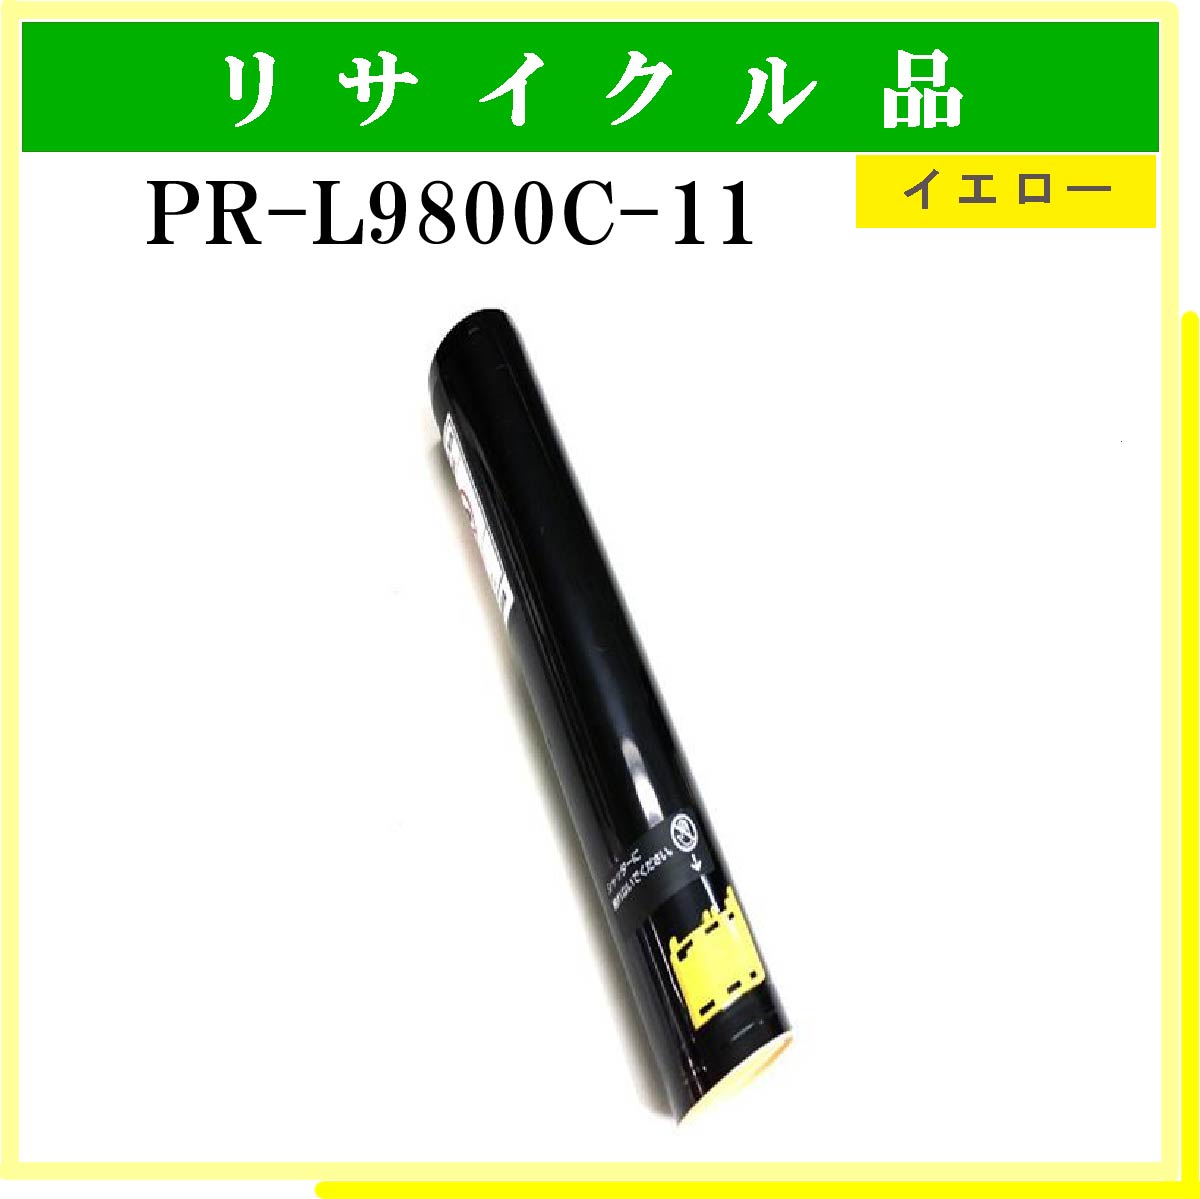 PR-L9800C-11